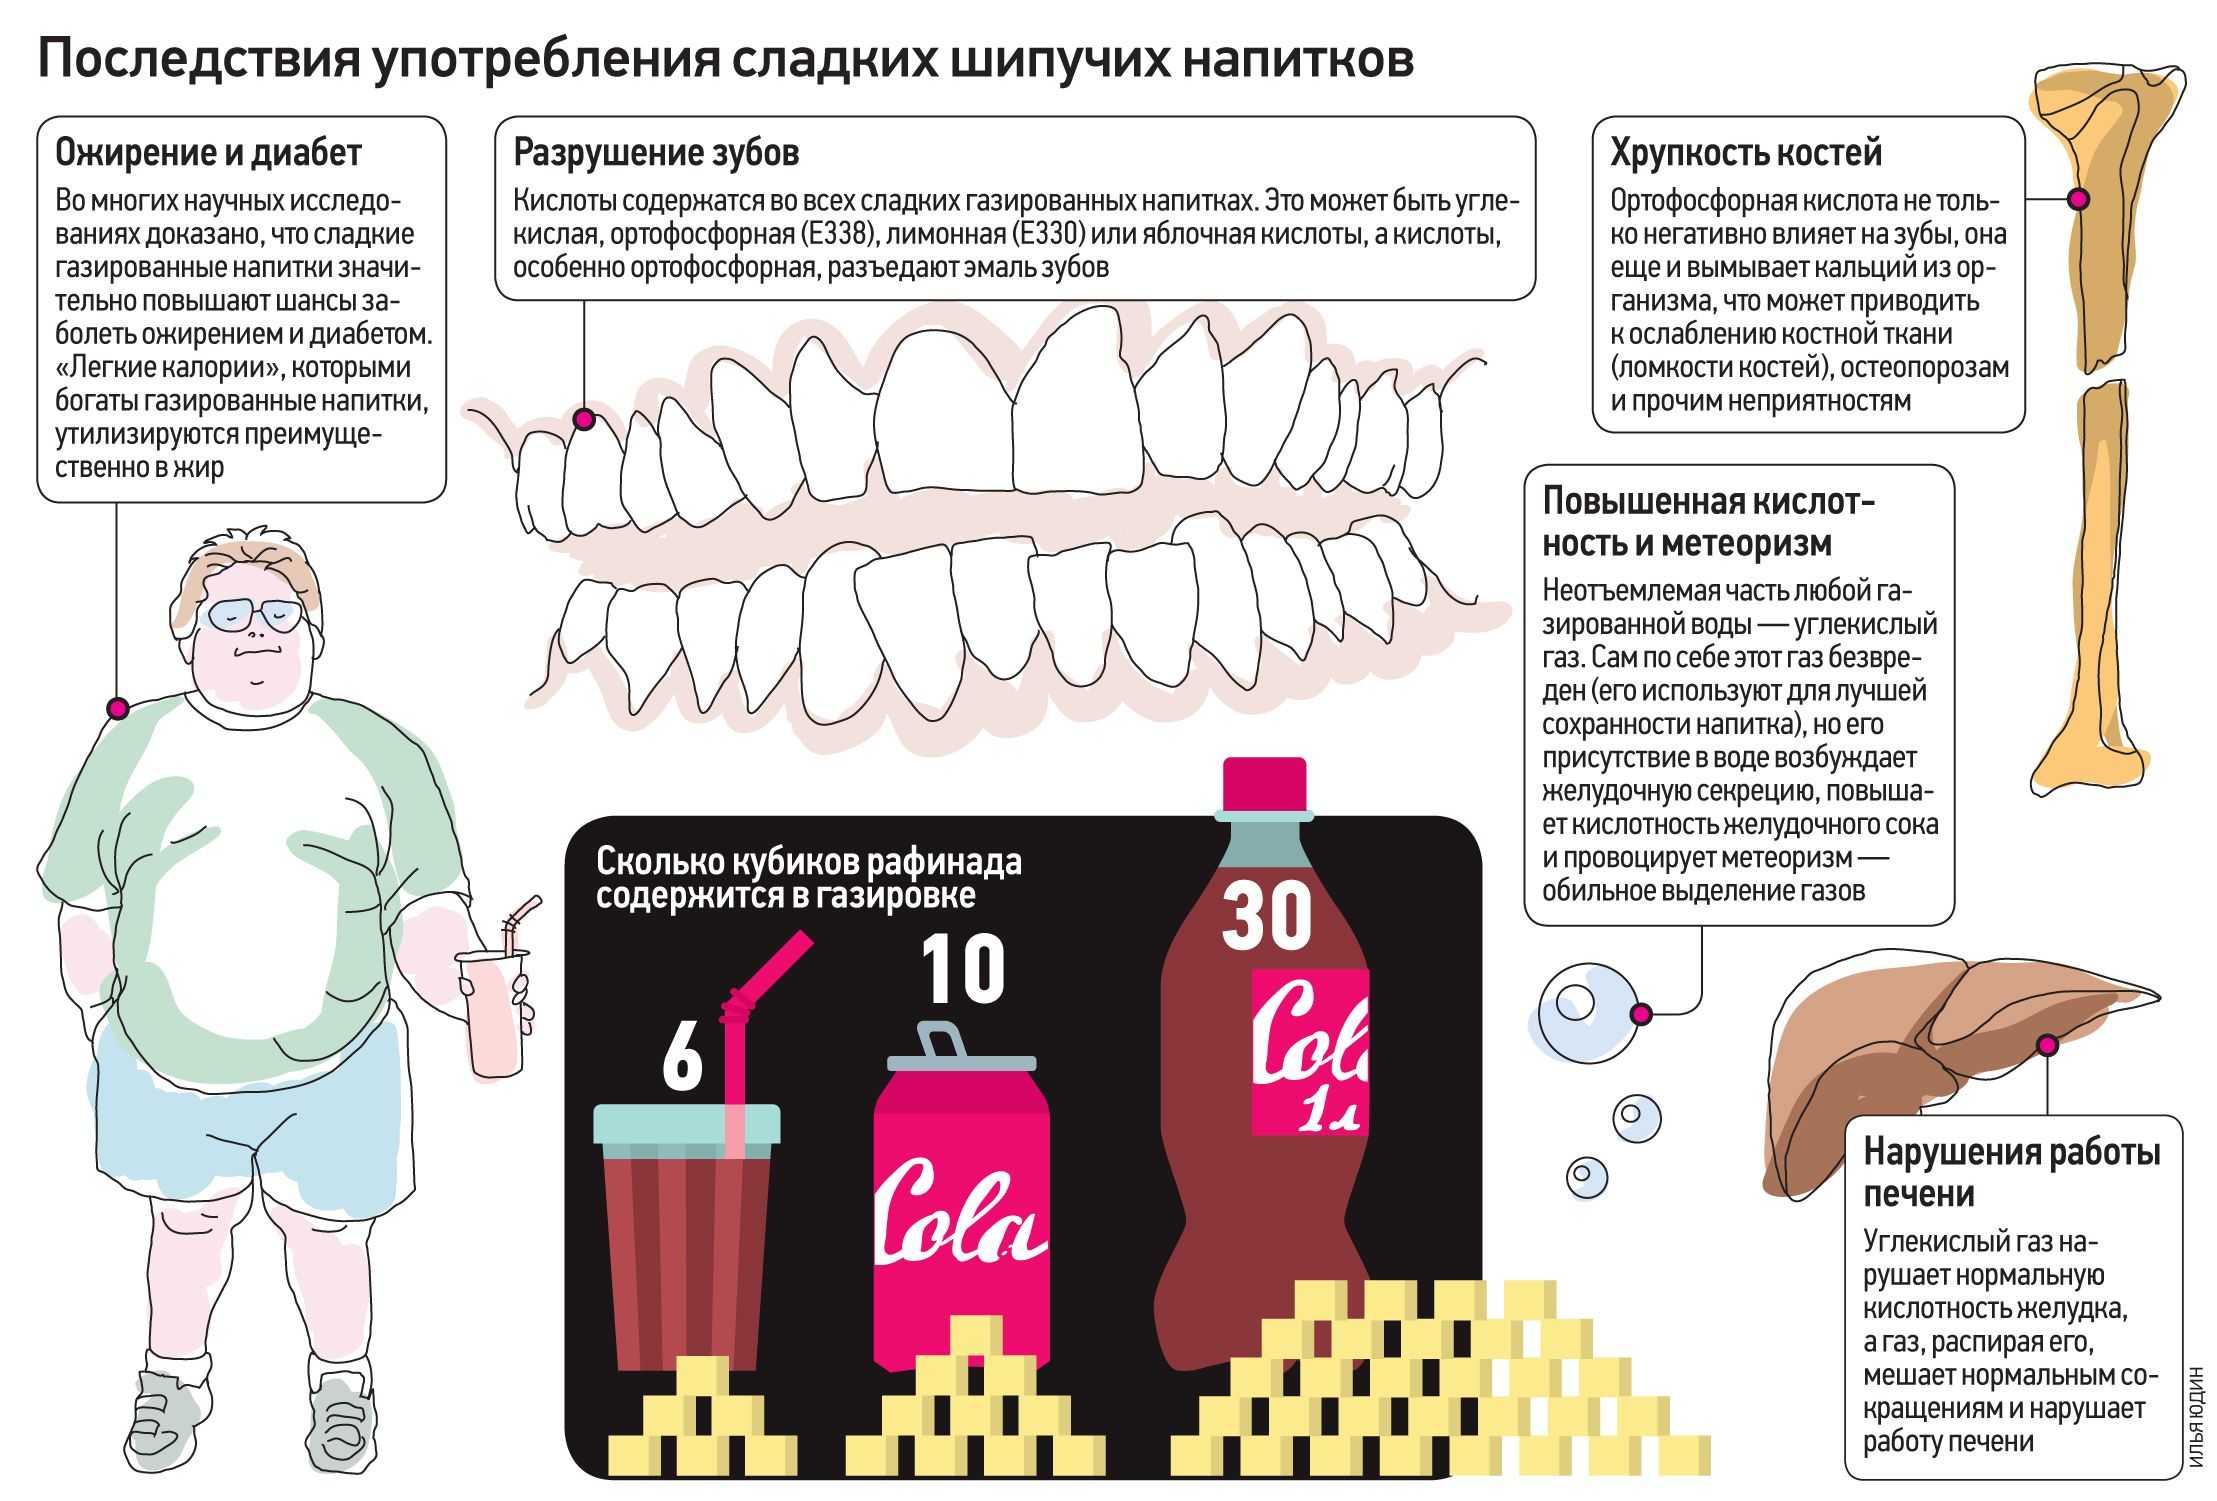 Частое употребление сладких напитков — причина преждевременной смерти - hi-news.ru